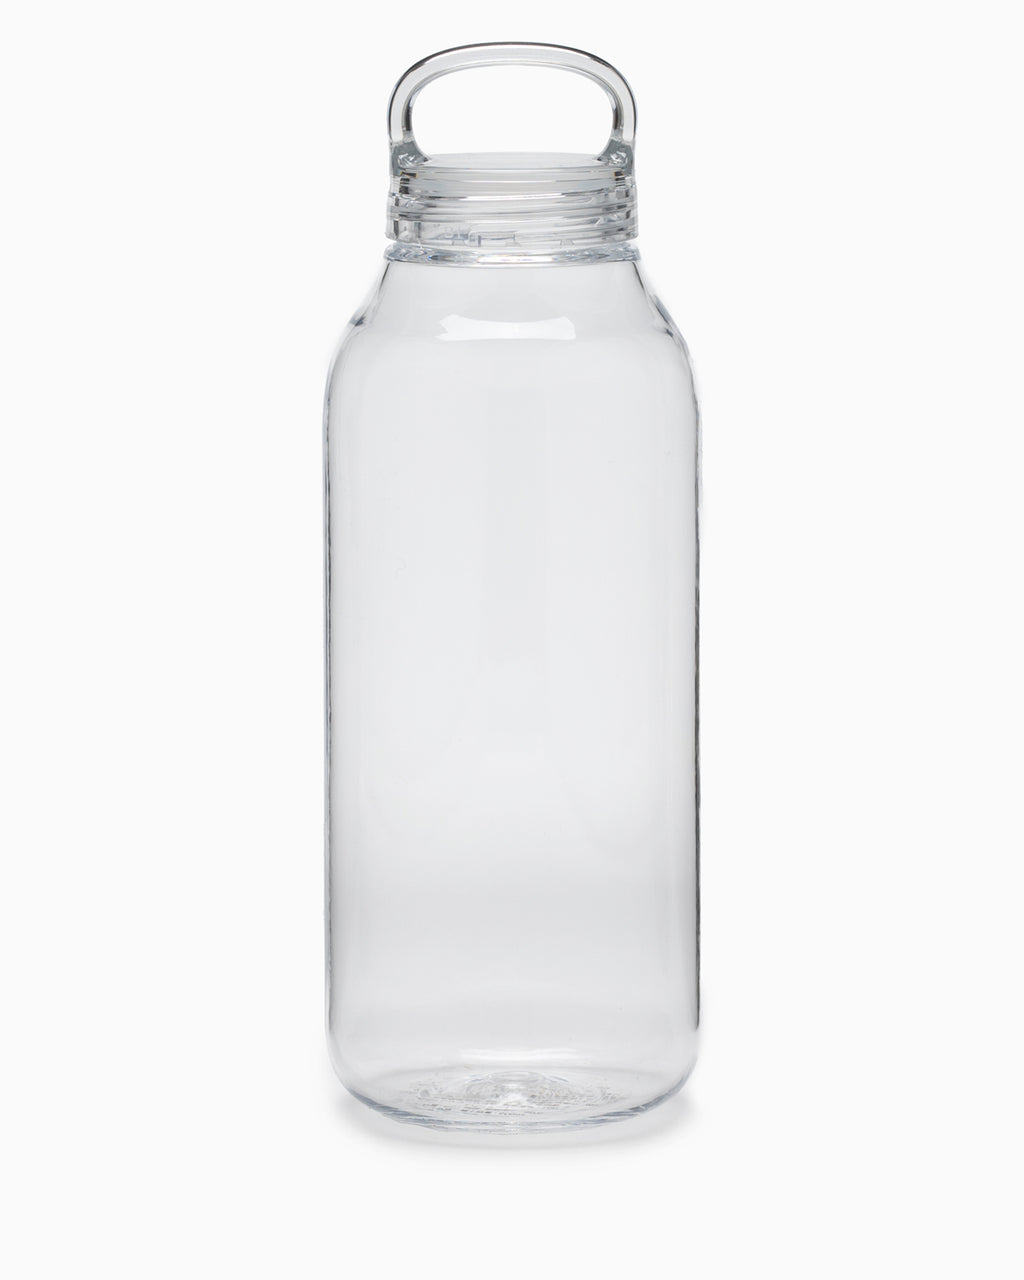 https://www.oldfaithfulshop.com/cdn/shop/products/Kinto-Water-Bottle-950ml-Clear-1.jpg?v=1679010692&width=1024